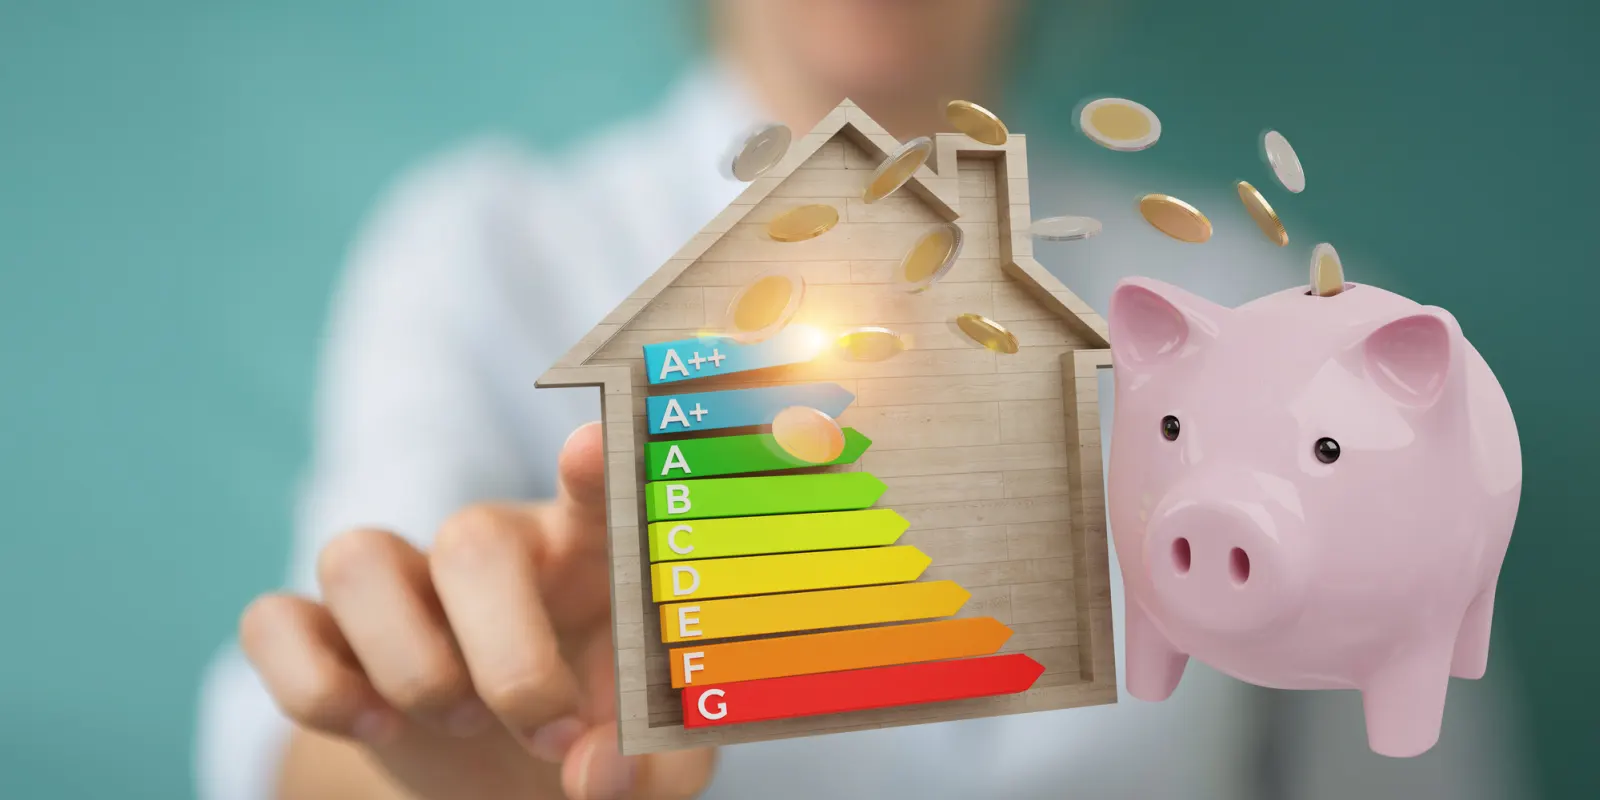 Open verwarmingselement van een huishoudelijk apparaat, vrij van kalkaanslag, wat energie-efficiëntie verhoogt en de levensduur verlengt